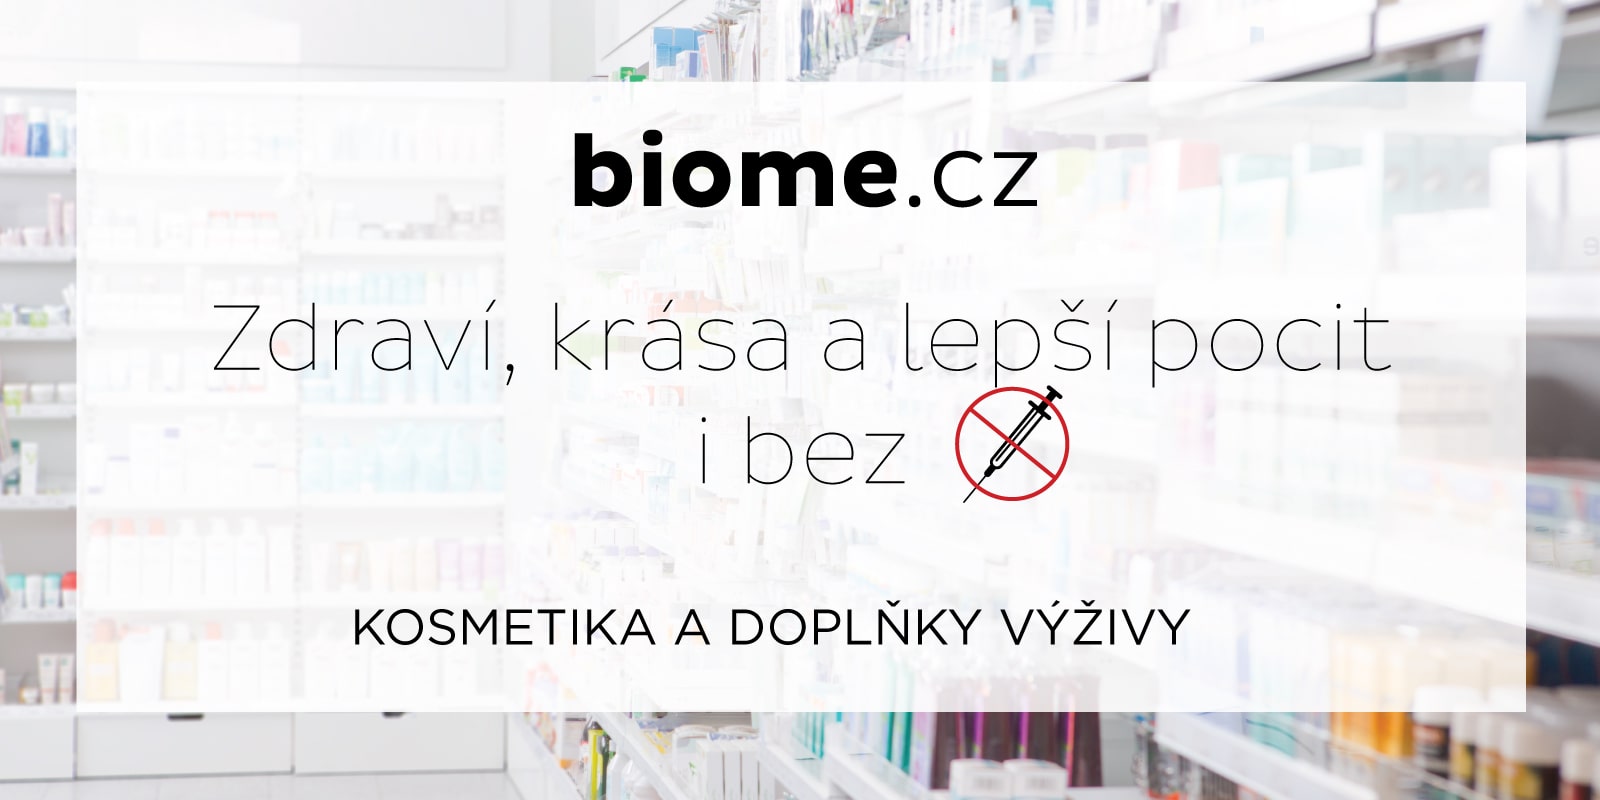 biome.sk - zdravie, krása a lepší pocit. Kozmetika aj proti vypadávaniu vlasov a doplnky výživy